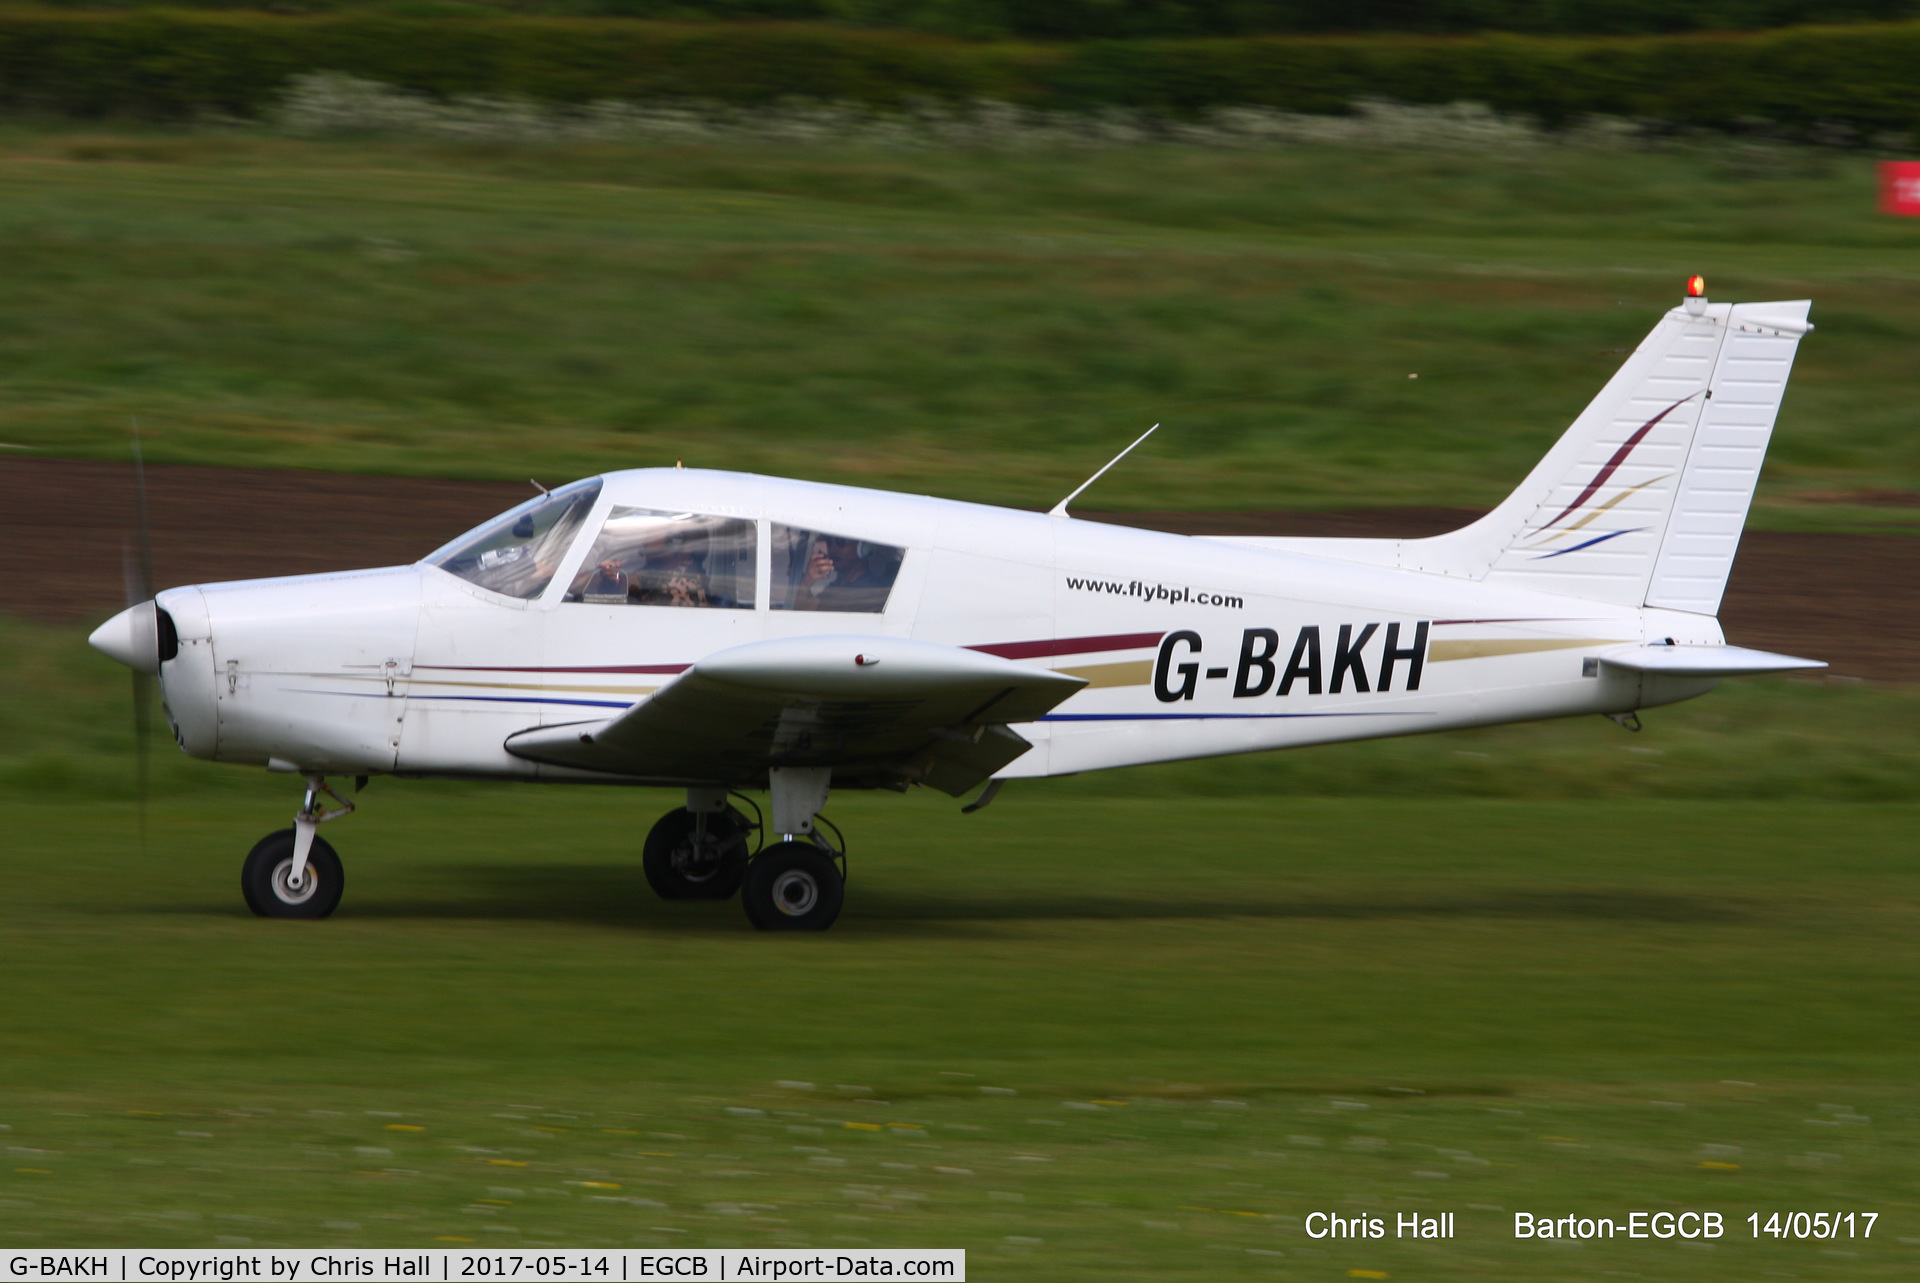 G-BAKH, 1972 Piper PA-28-140 Cherokee F C/N 28-7325014, at Barton